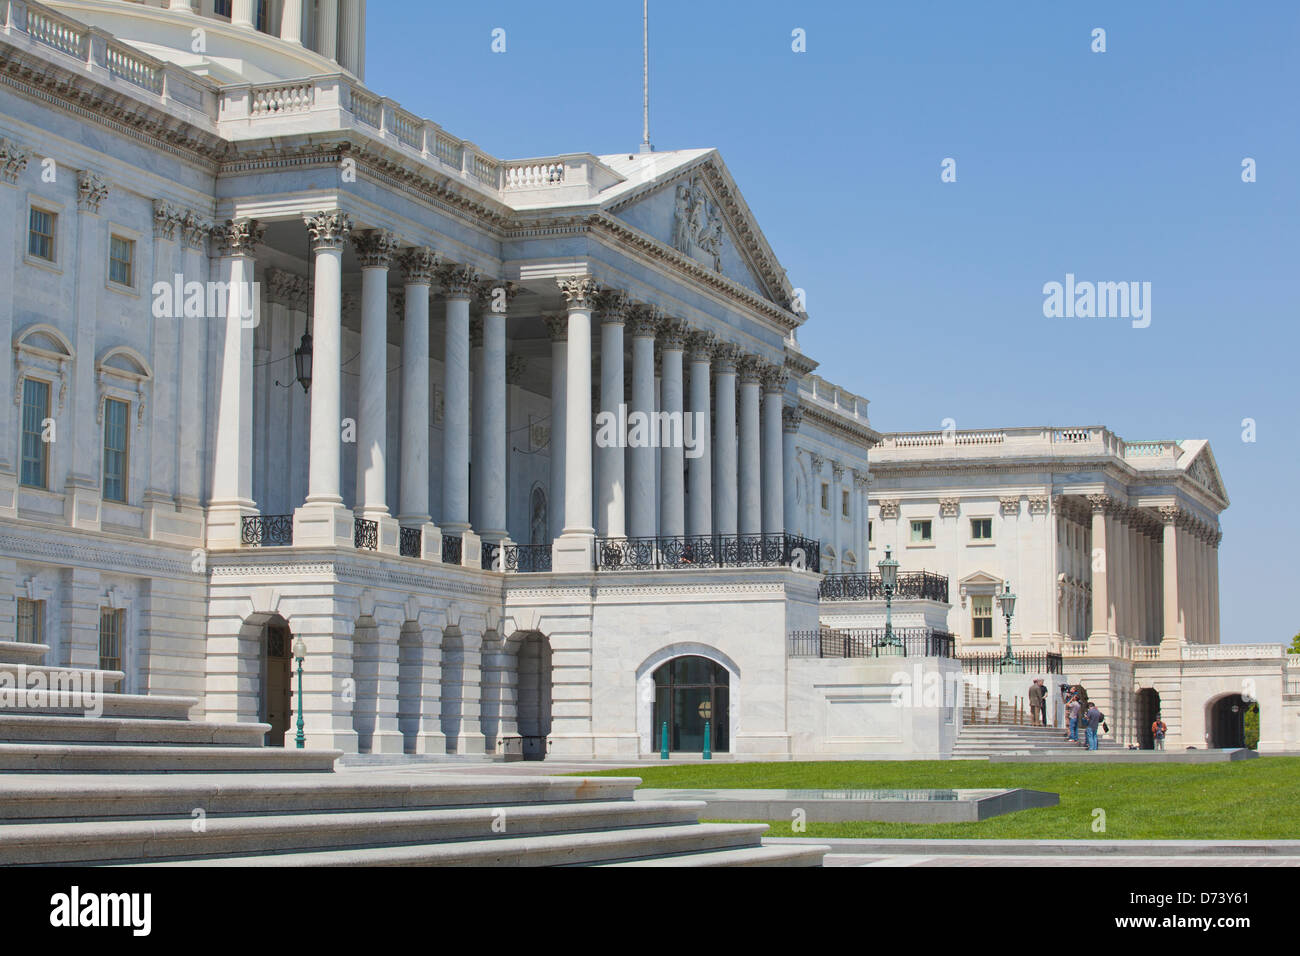 La facciata est della US Capitol Building - Washington DC, Stati Uniti d'America Foto Stock